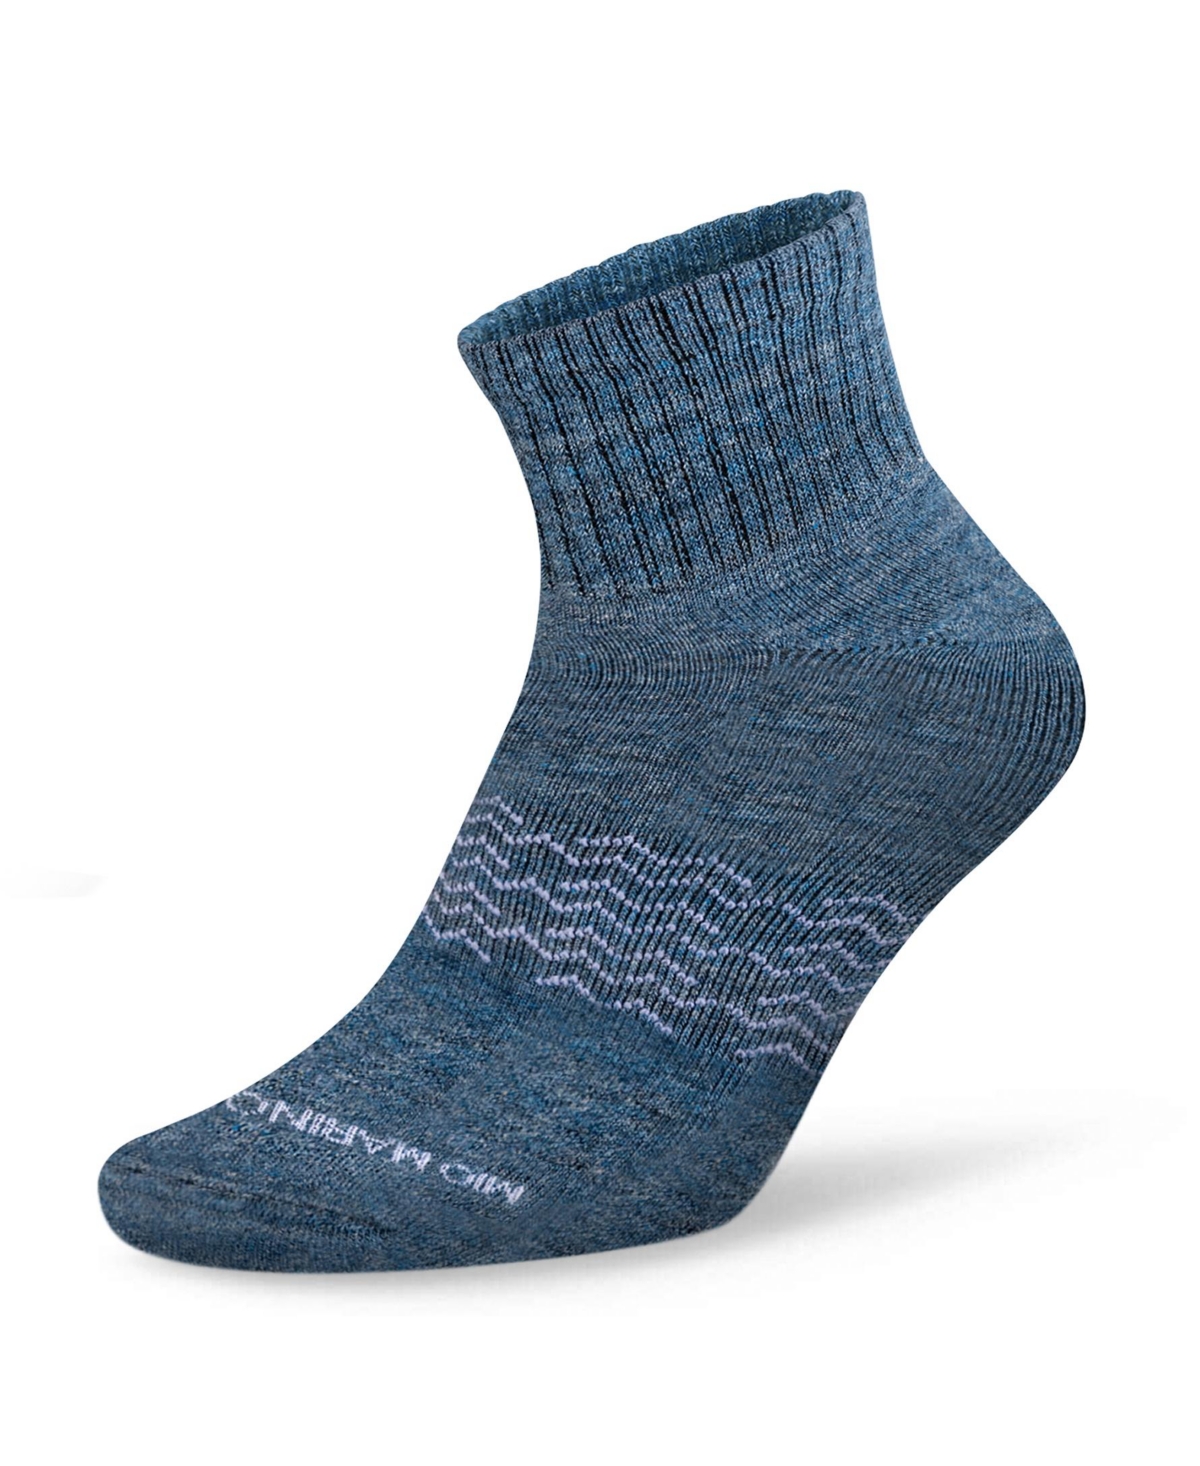 Men's Moisture Control Low Cut Ankle Socks 1 Pack - Azure - space dye